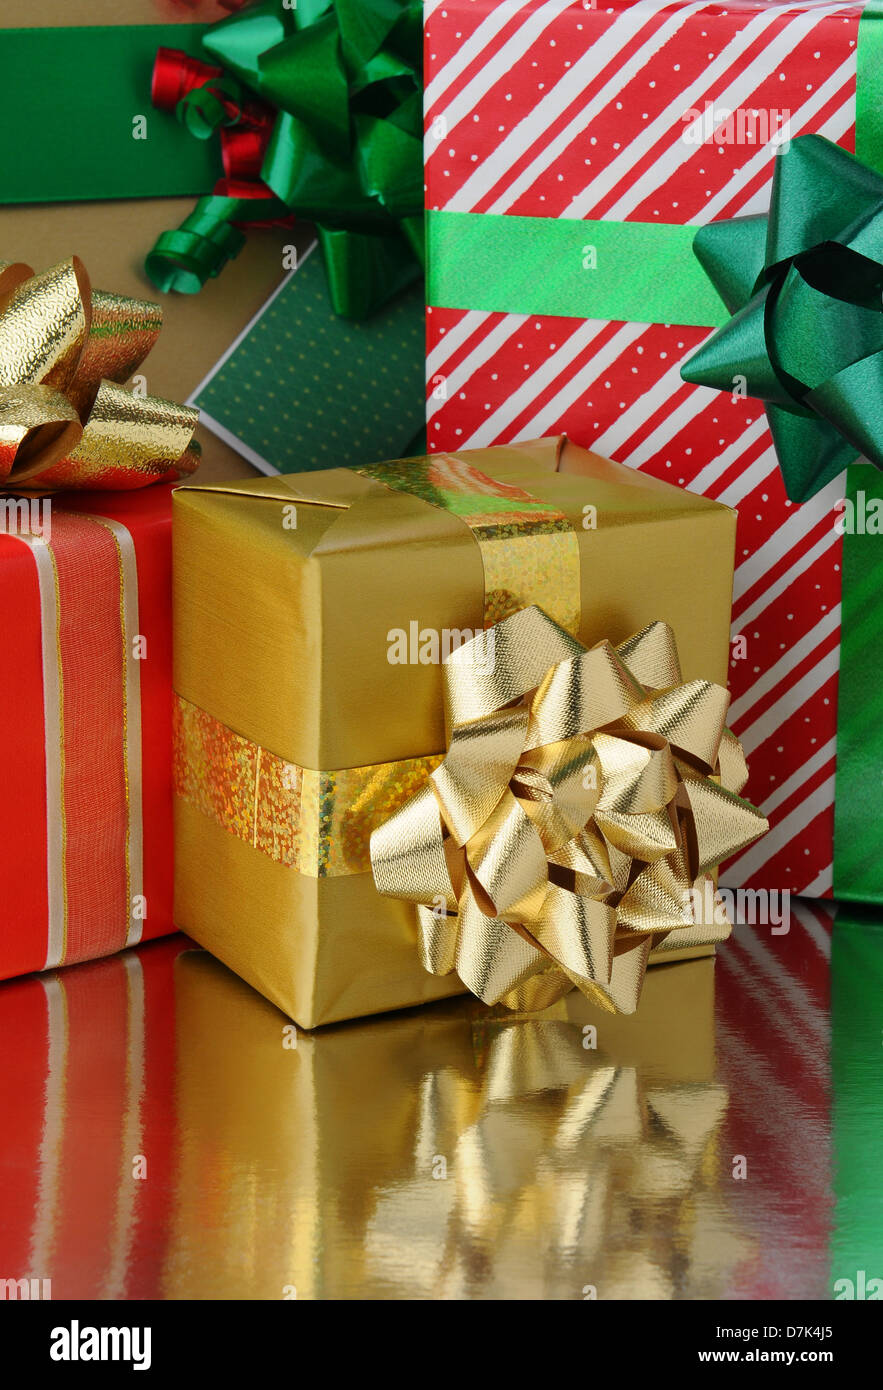 Libre d'un assortiment de cadeaux de Noël de taille variable sur une surface réfléchissante. Format vertical Banque D'Images